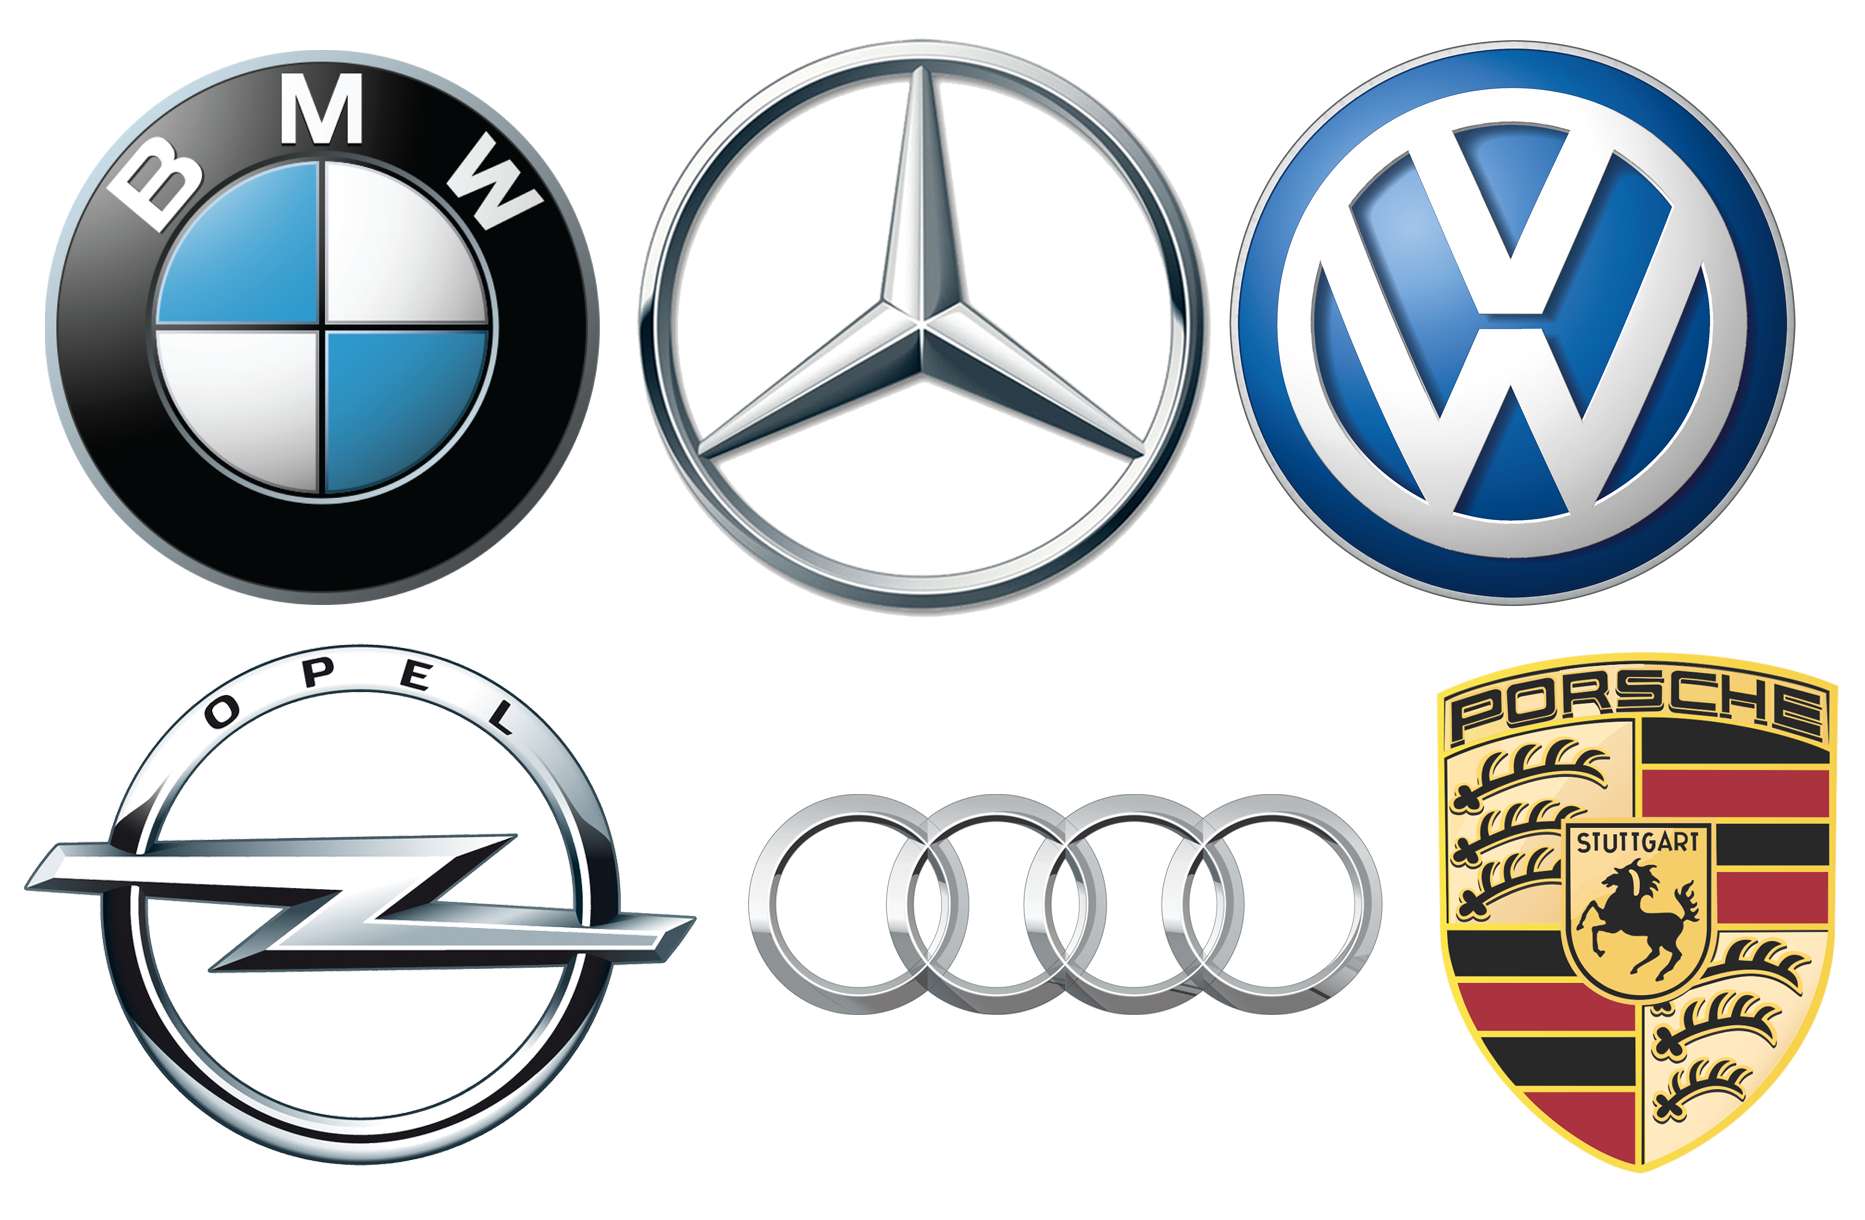 Bmw volkswagen. Opel BMW Audi Mercedes Benz. BMW Mercedes Audi Volkswagen. Audi, BMW, Volkswagen Mercedes-Benz. Audi Volkswagen Opel.